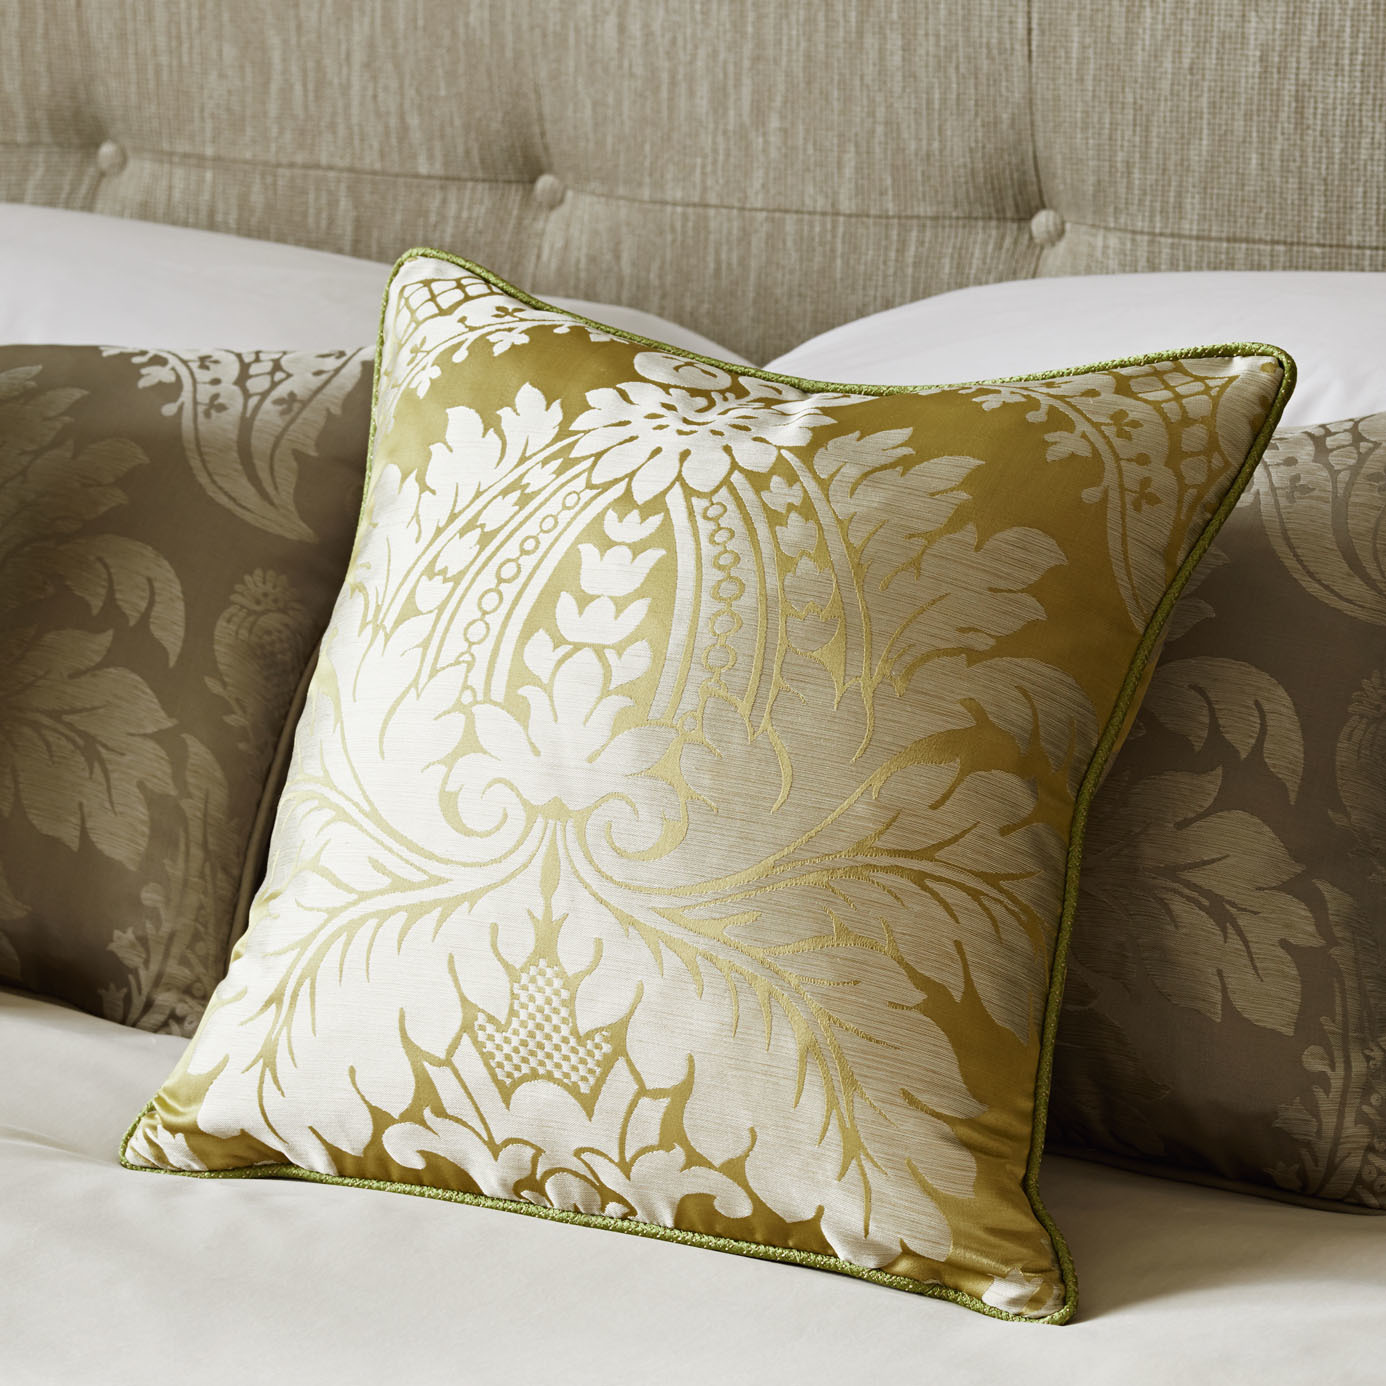 Malmaison Damask Pale Gold Fabric by ZOF